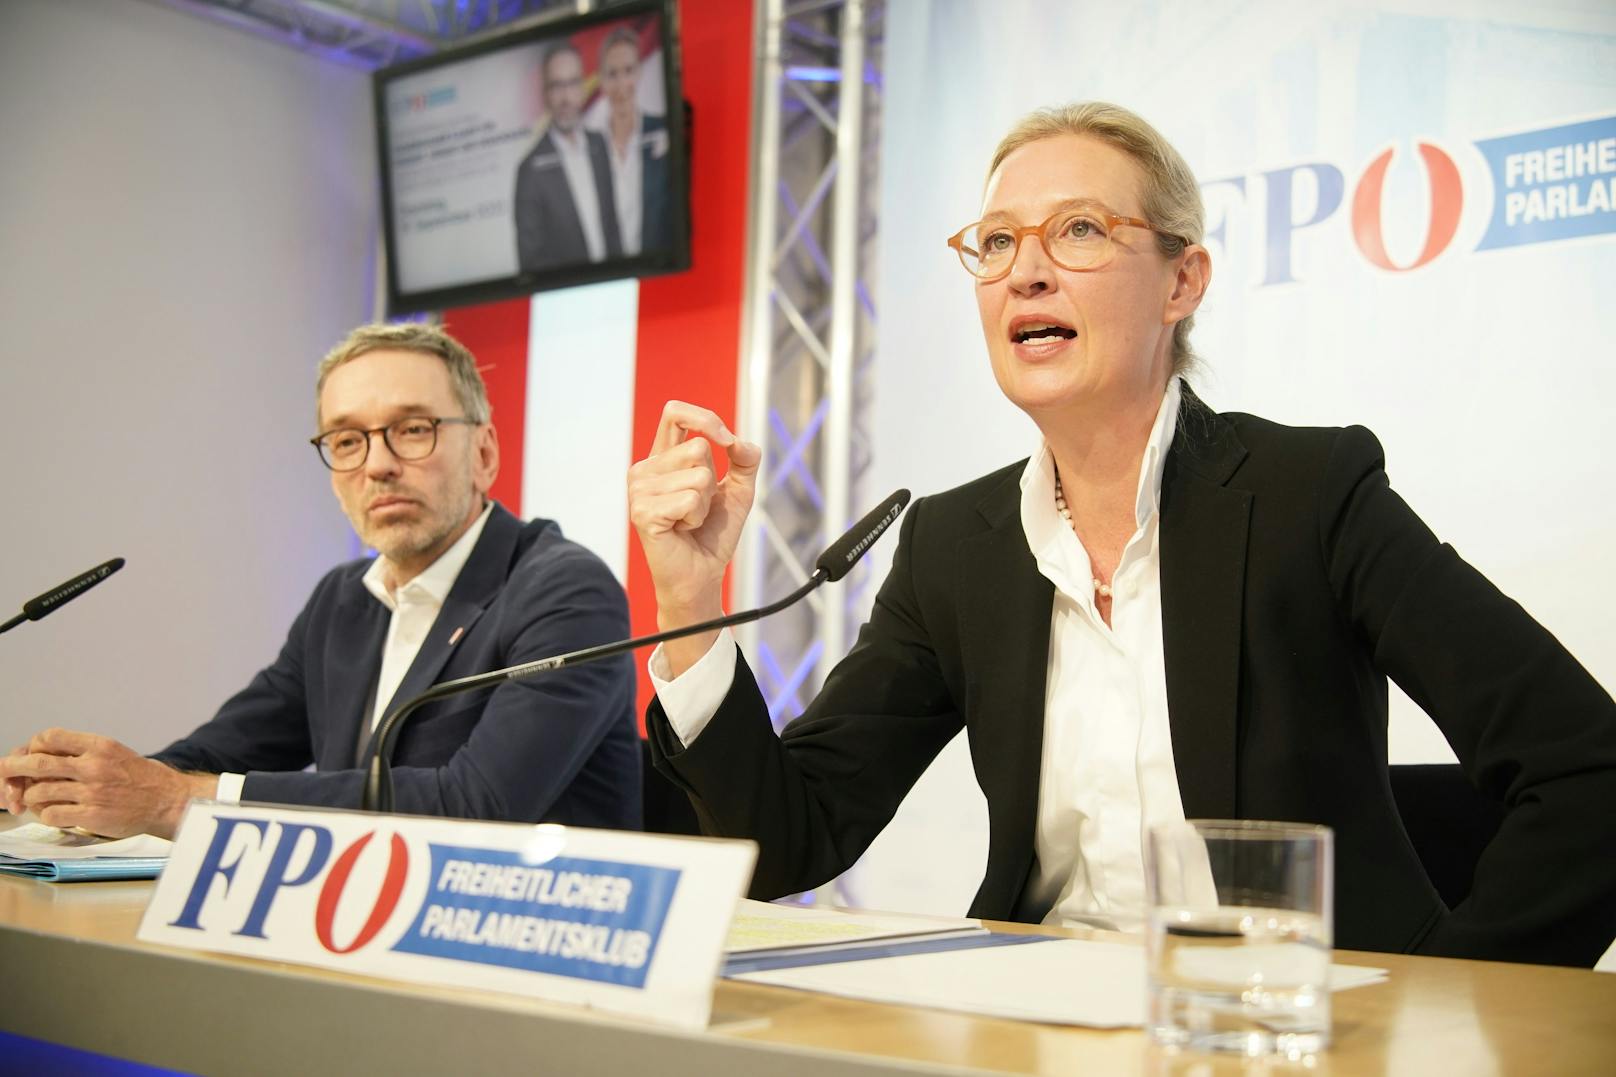 Doppelt rechts: Alice Weidel (AfD) zu Gast in Wien für eine gemeinsame Pressekonferenz mit Herbert Kickl (FPÖ) am 19. September 2023. Beide Parteien begreifen sich als "Schwesterparteien".